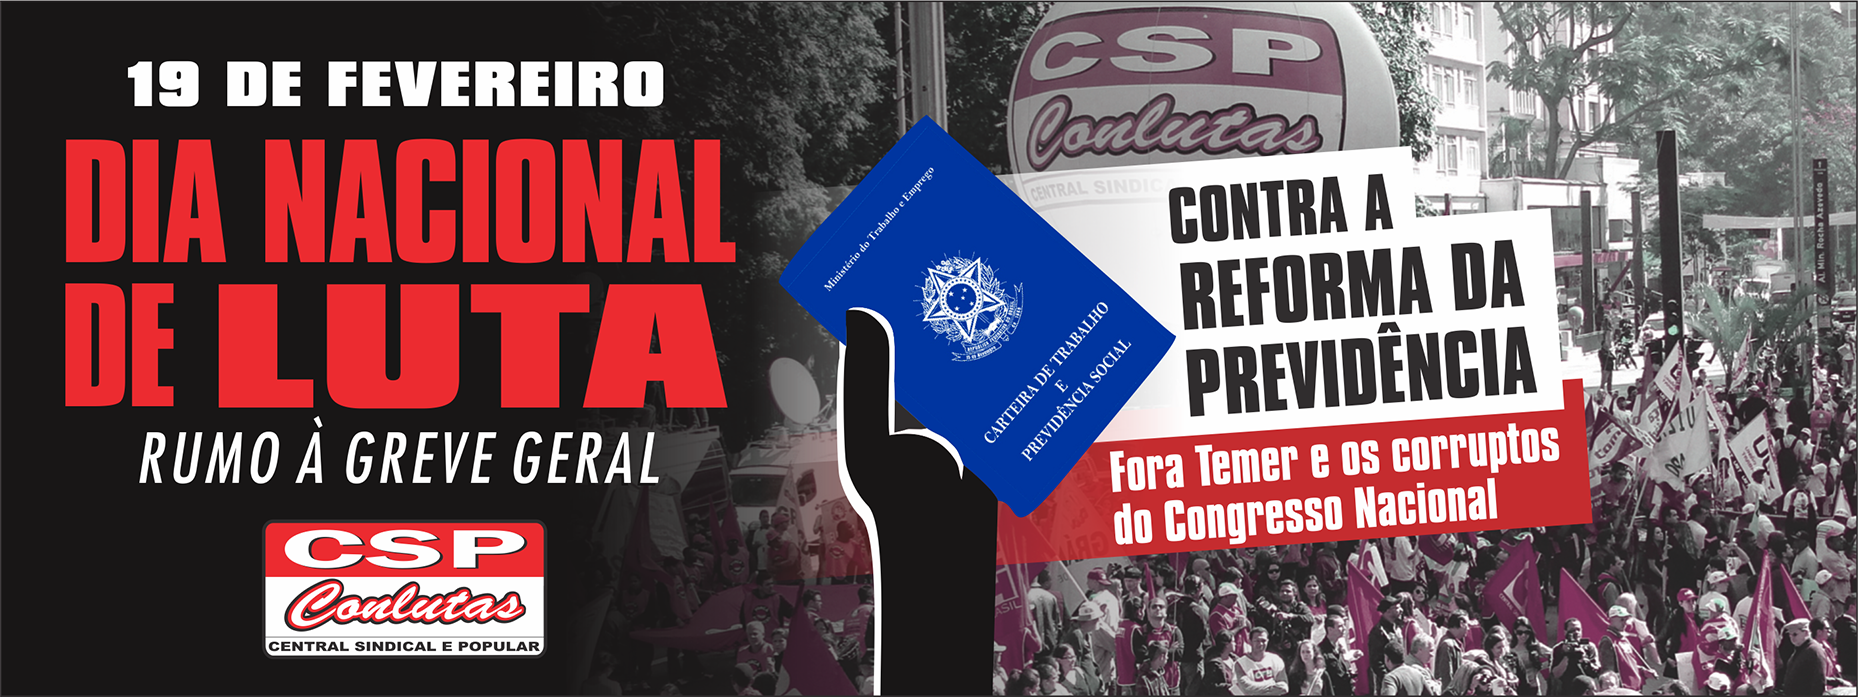 19 de fevereiro: dia nacional de luta contra a Reforma da Previdência!